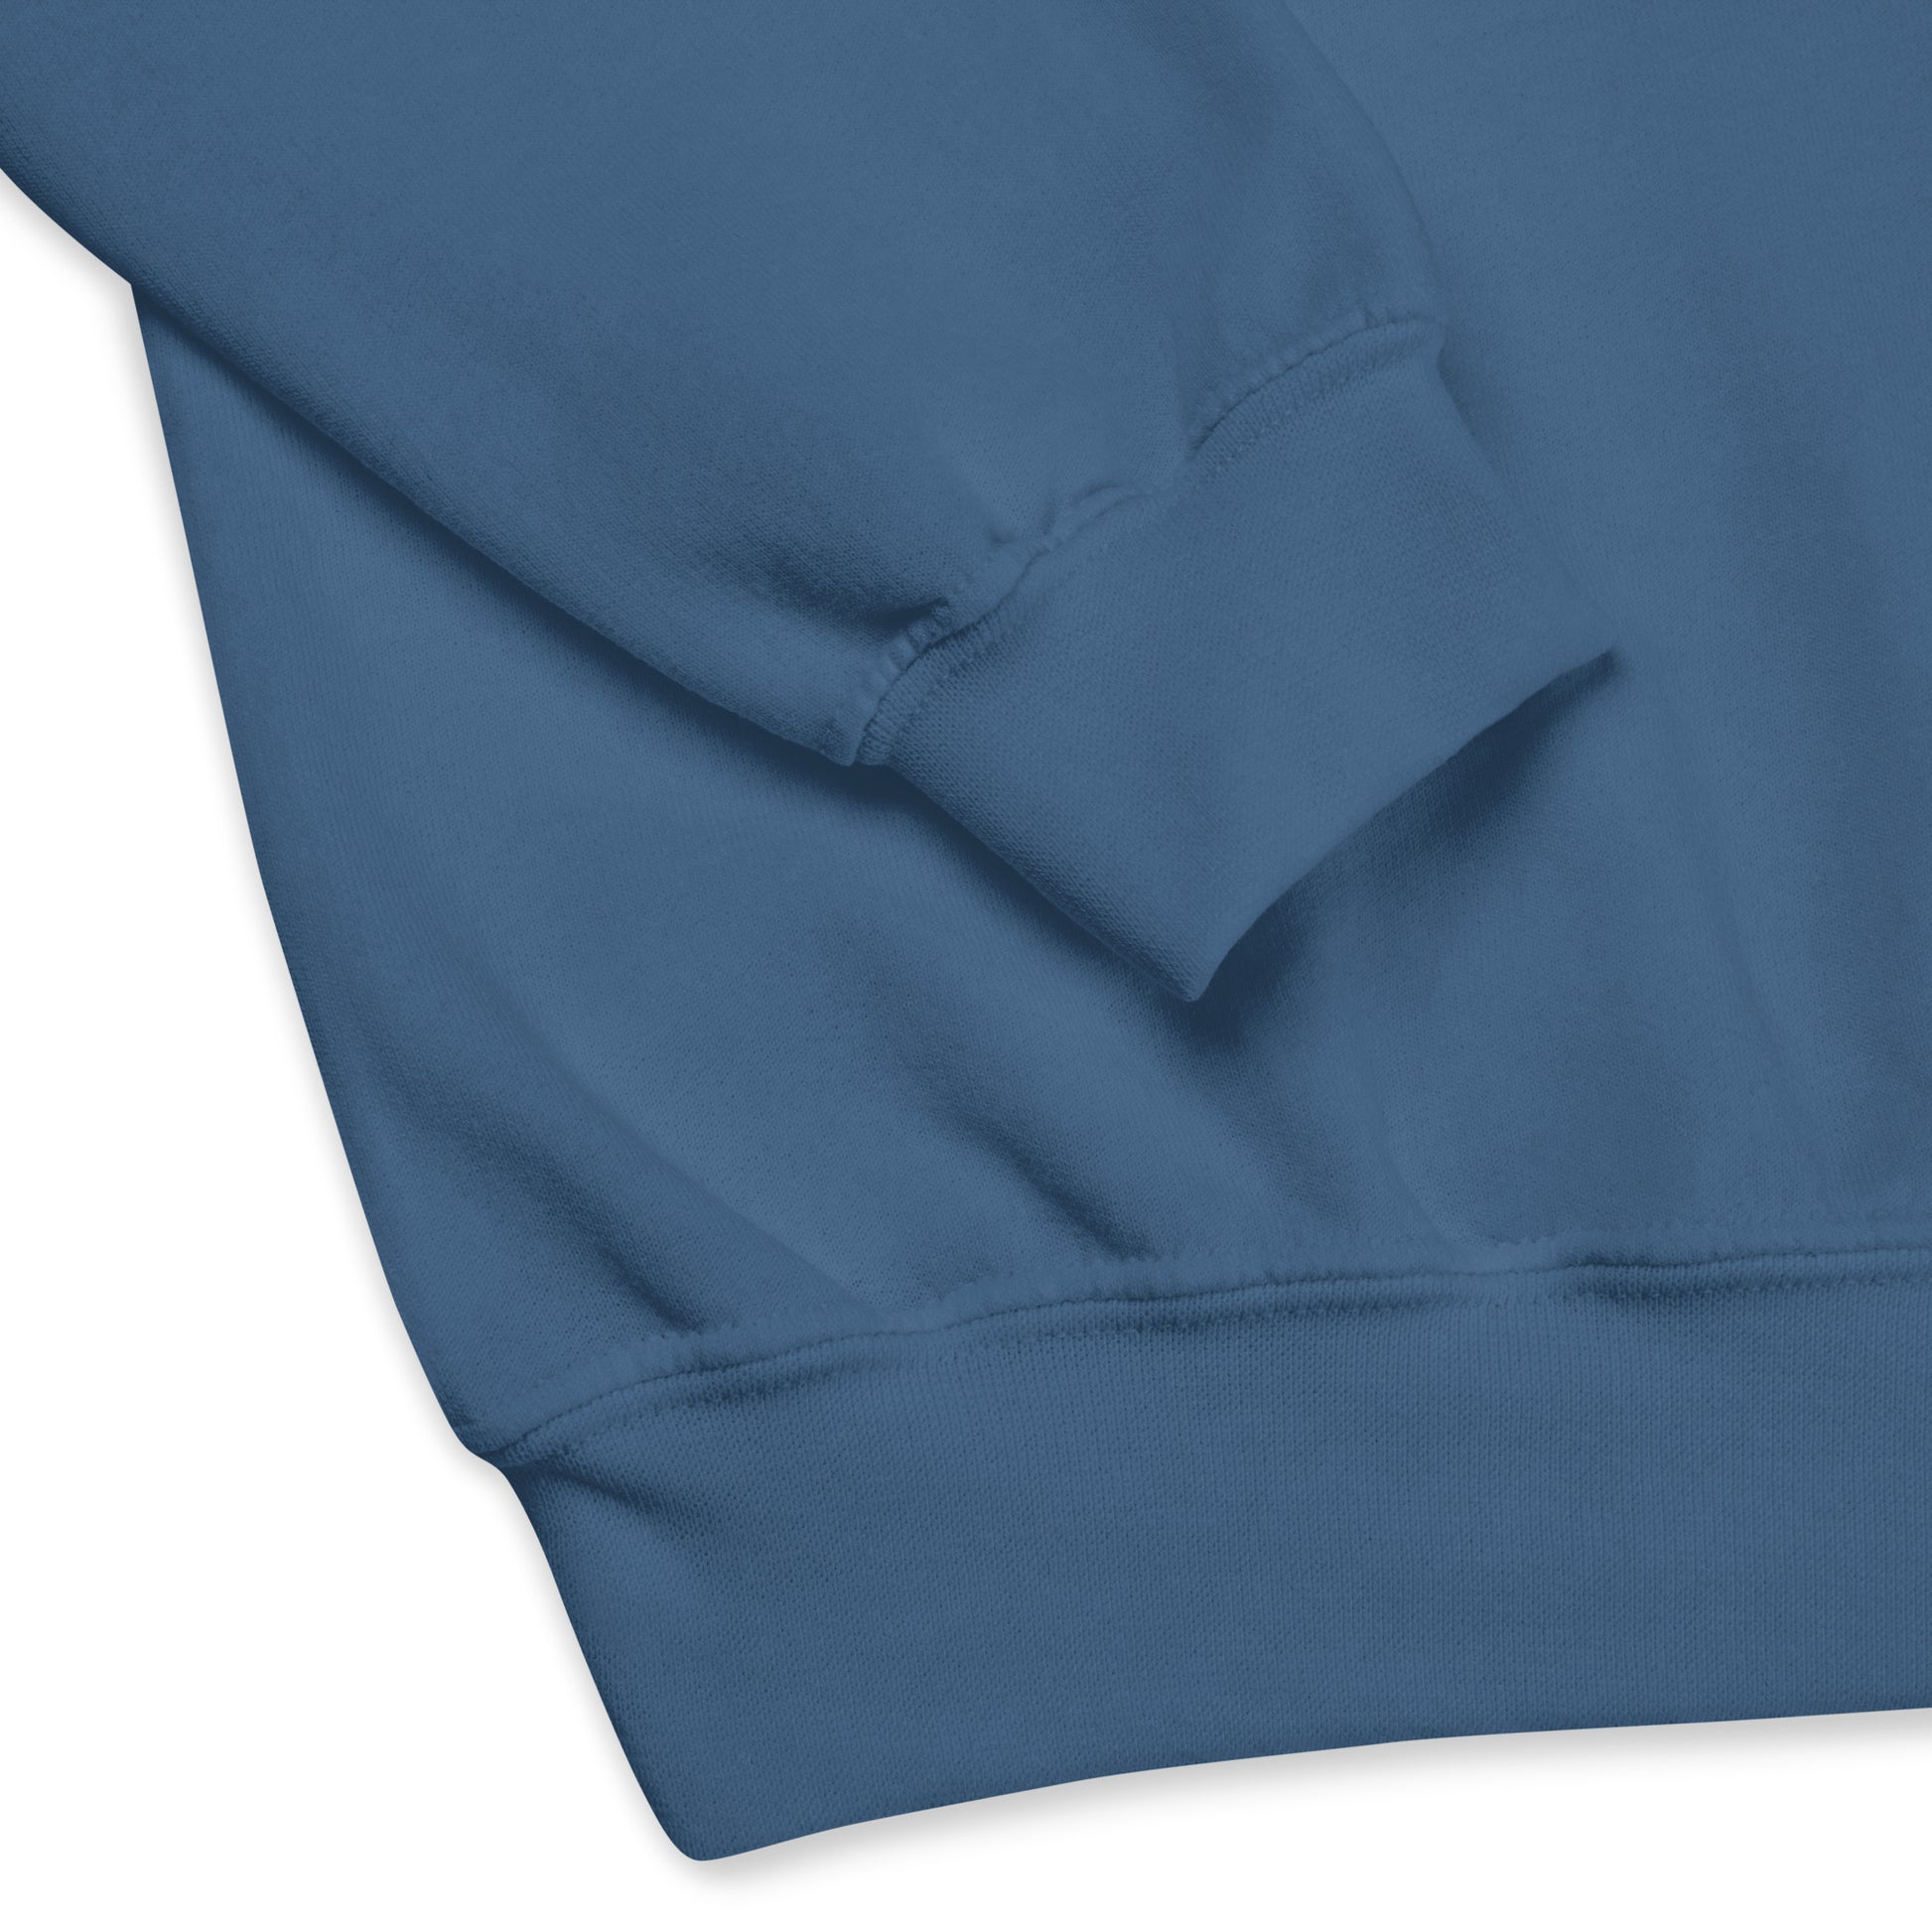 Airport Code Sweatshirt - Navy Blue Graphic • AUS Austin • YHM Designs - Image 03